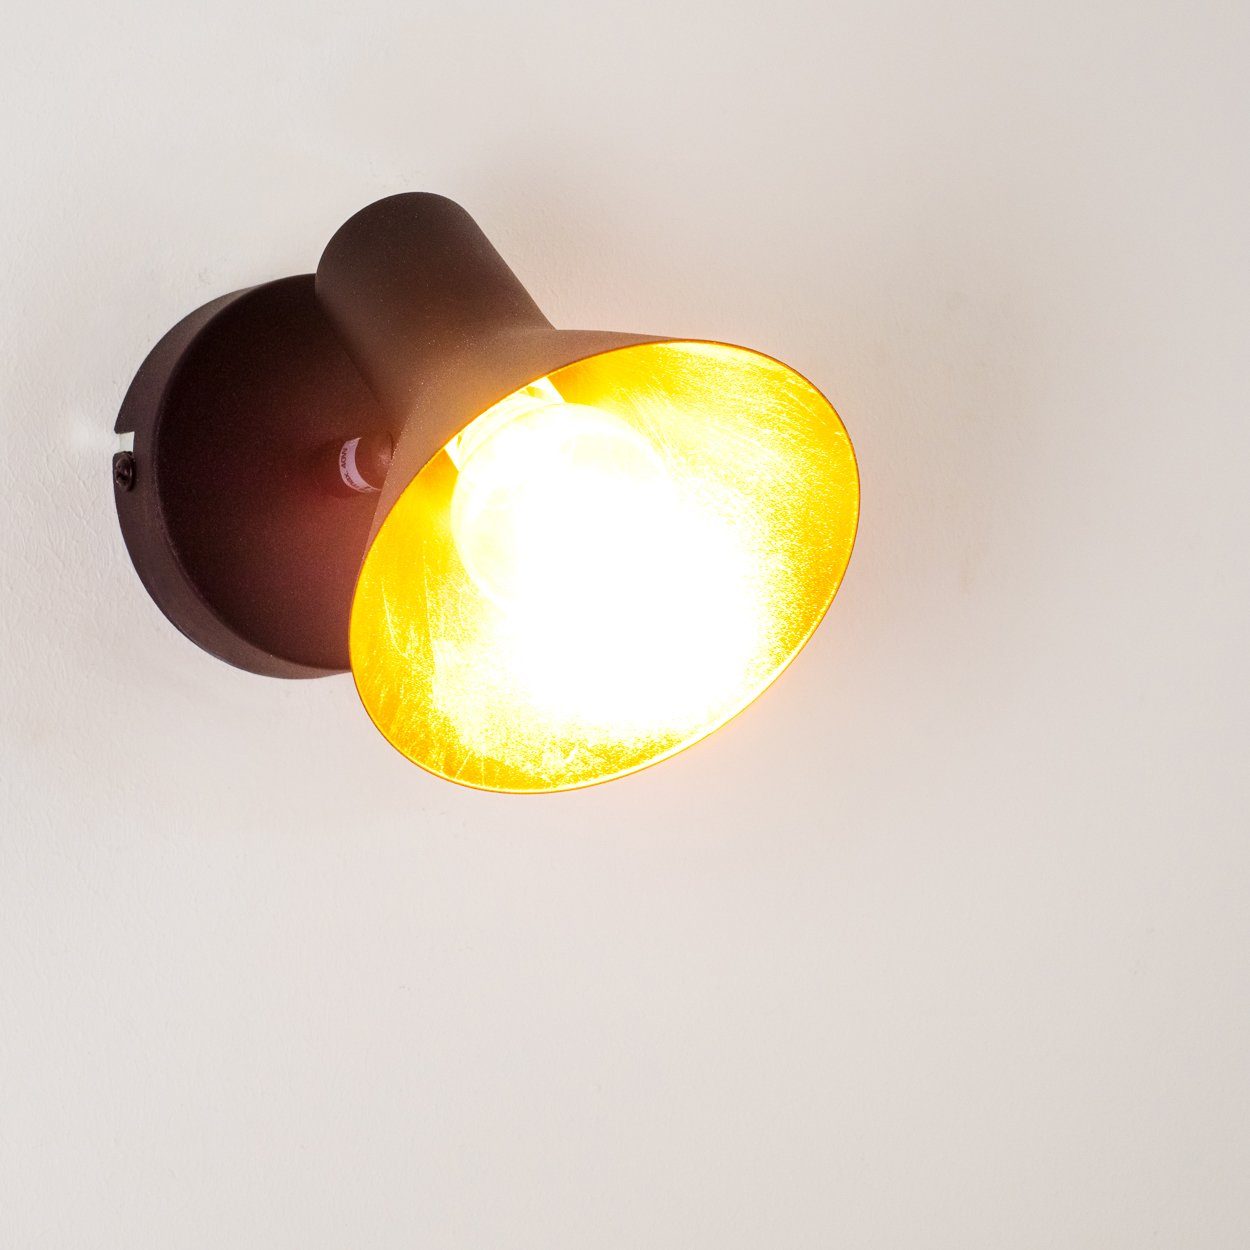 Design Wand Lampe Spot Leuchte Kupfer Metall Beleuchtung Flur Diele Wohn Zimmer 